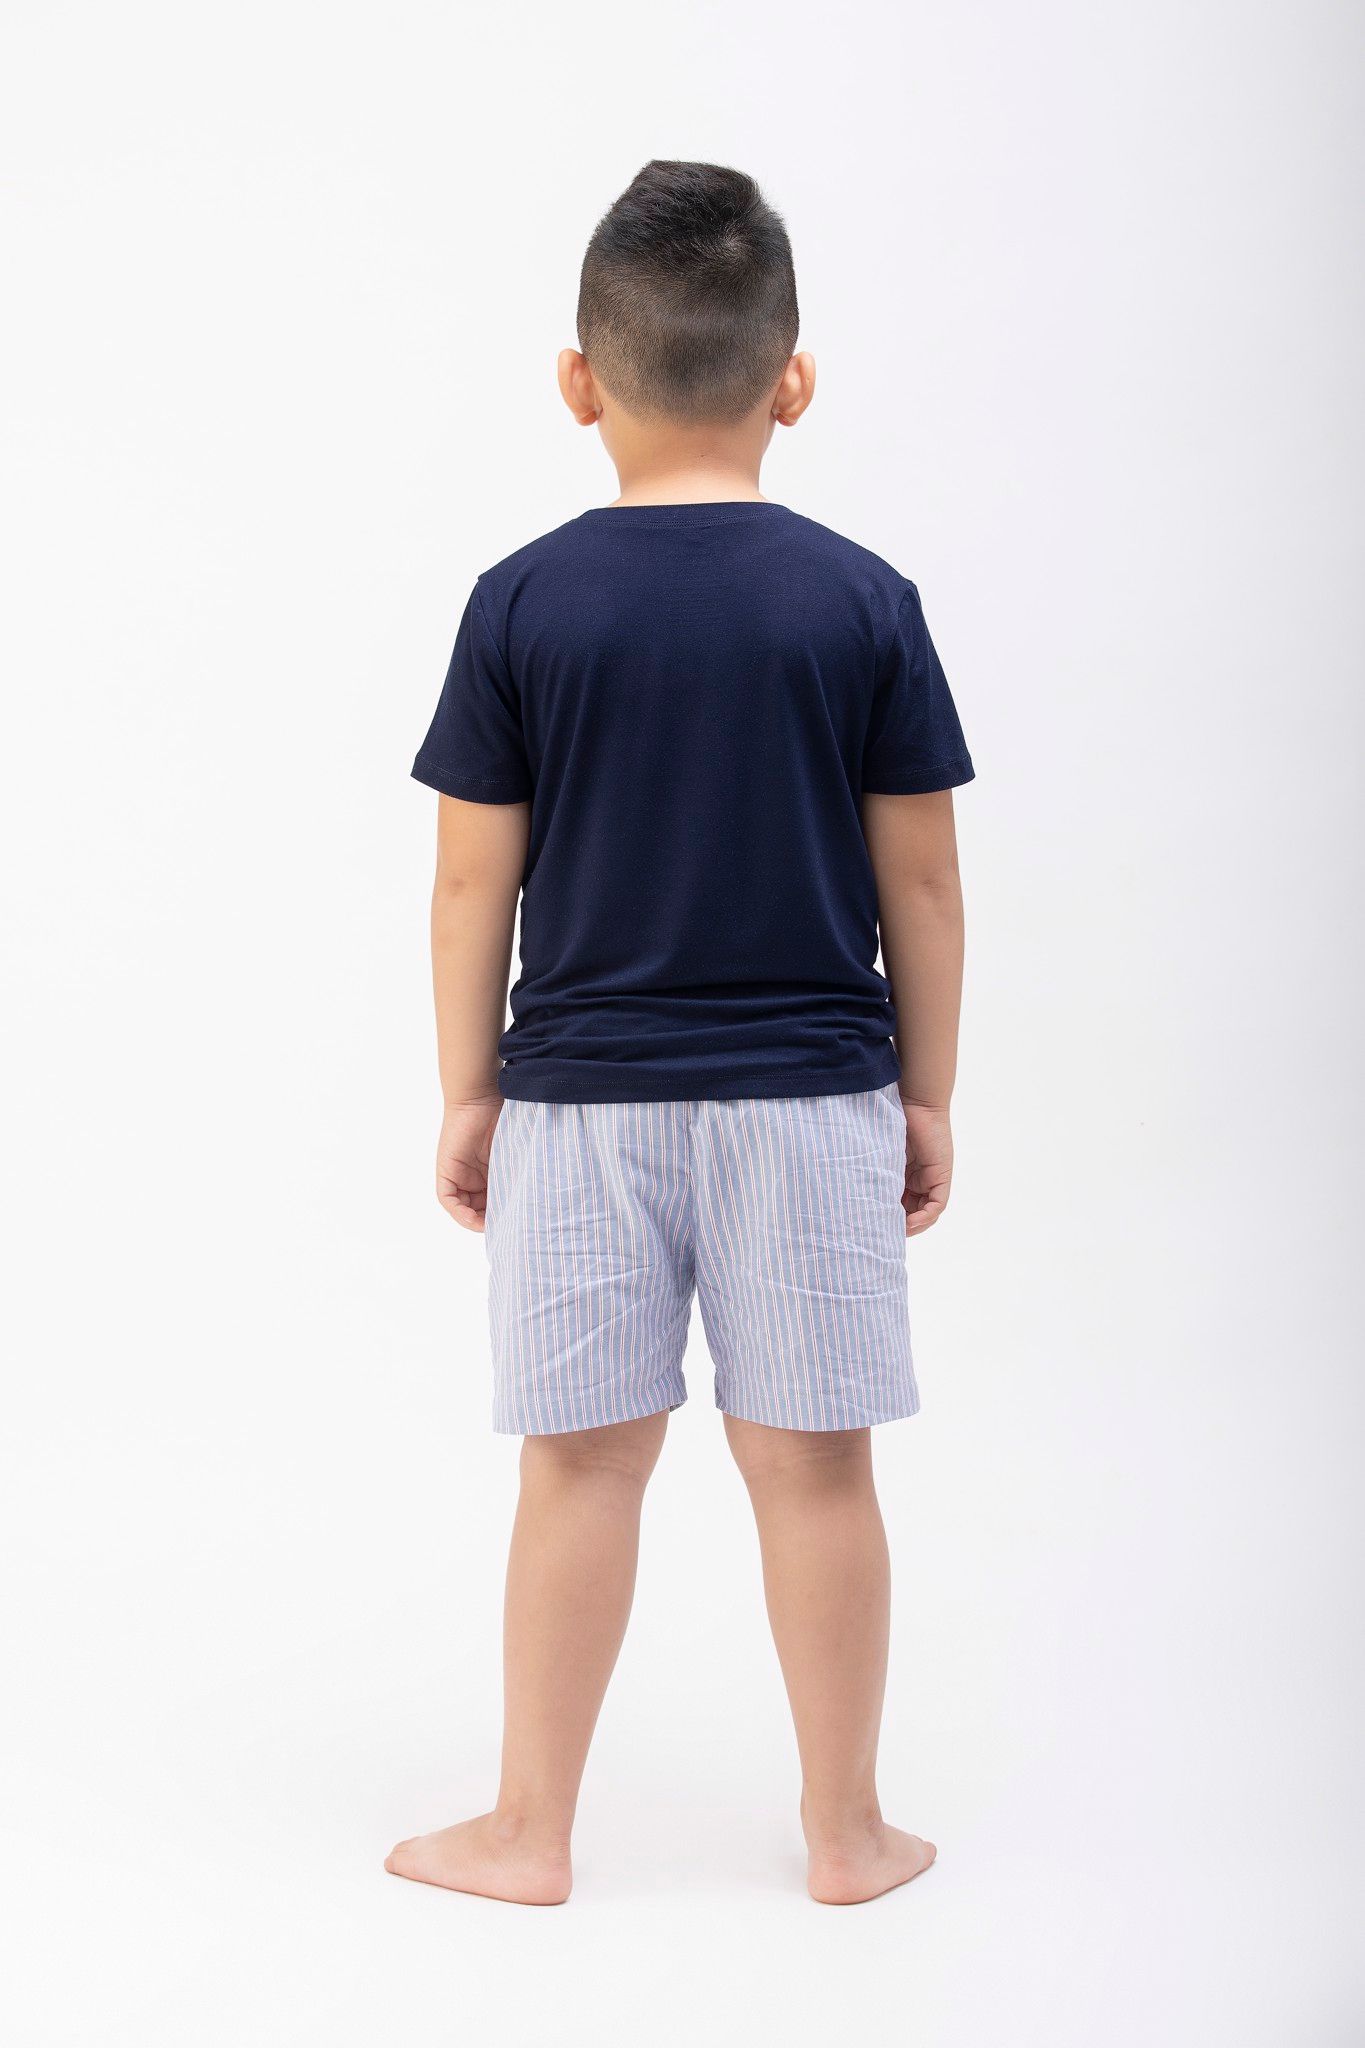  Bộ mặc nhà Bé Trai quần shorts - Áo navy/trắng quần sọc xanh 